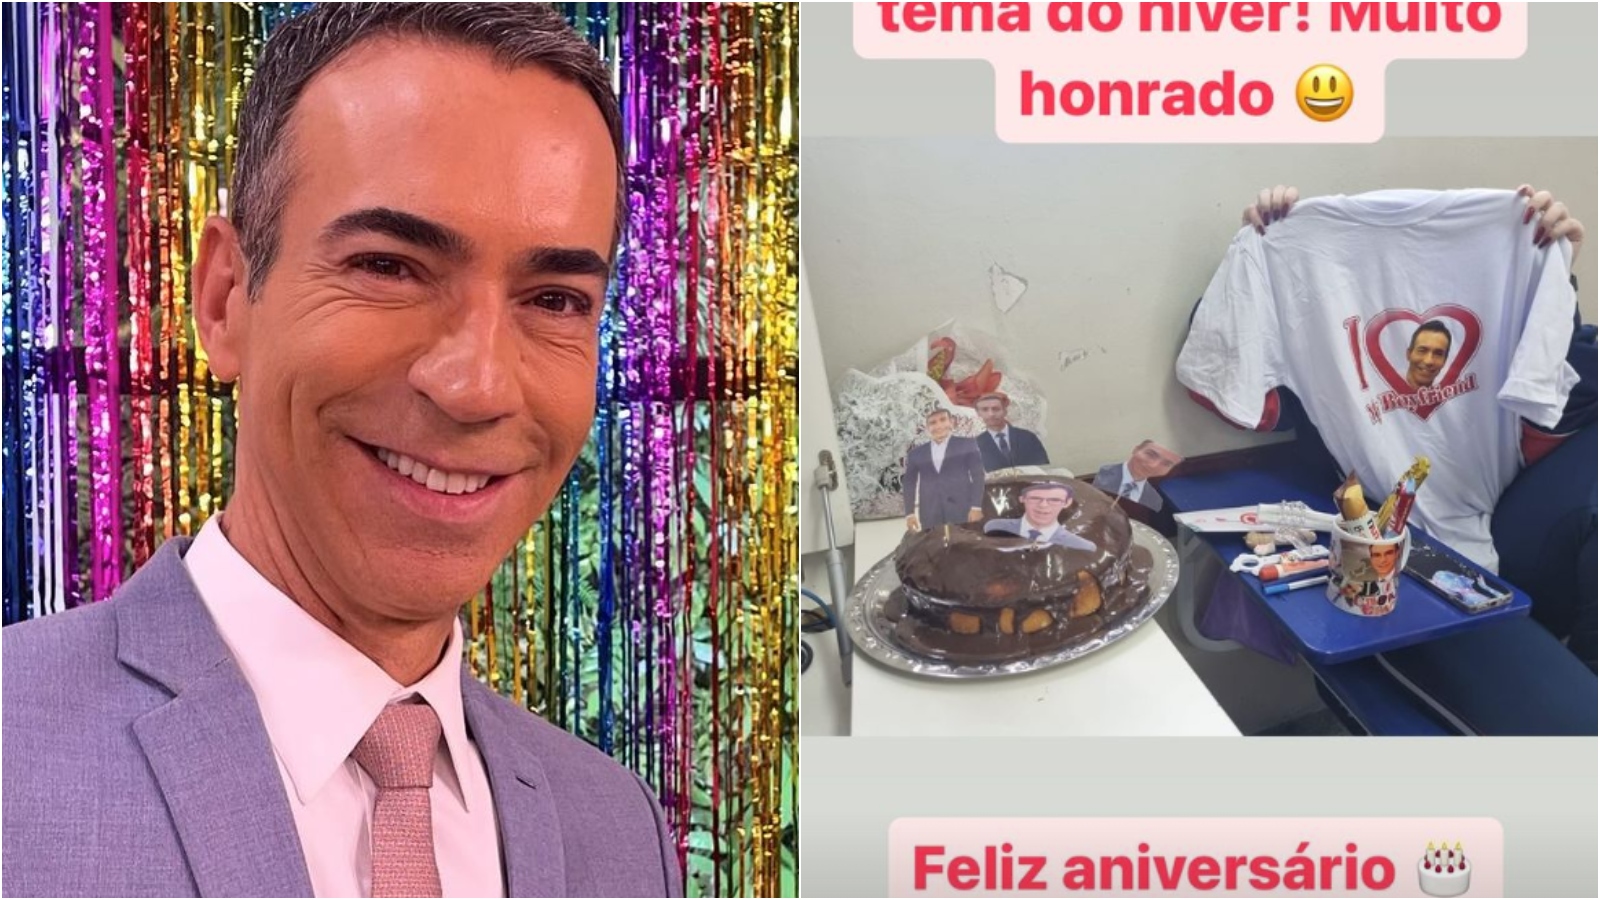 Fã homenageia Cesar Tralli com tema de festa de aniversário: 'Muito honrado'